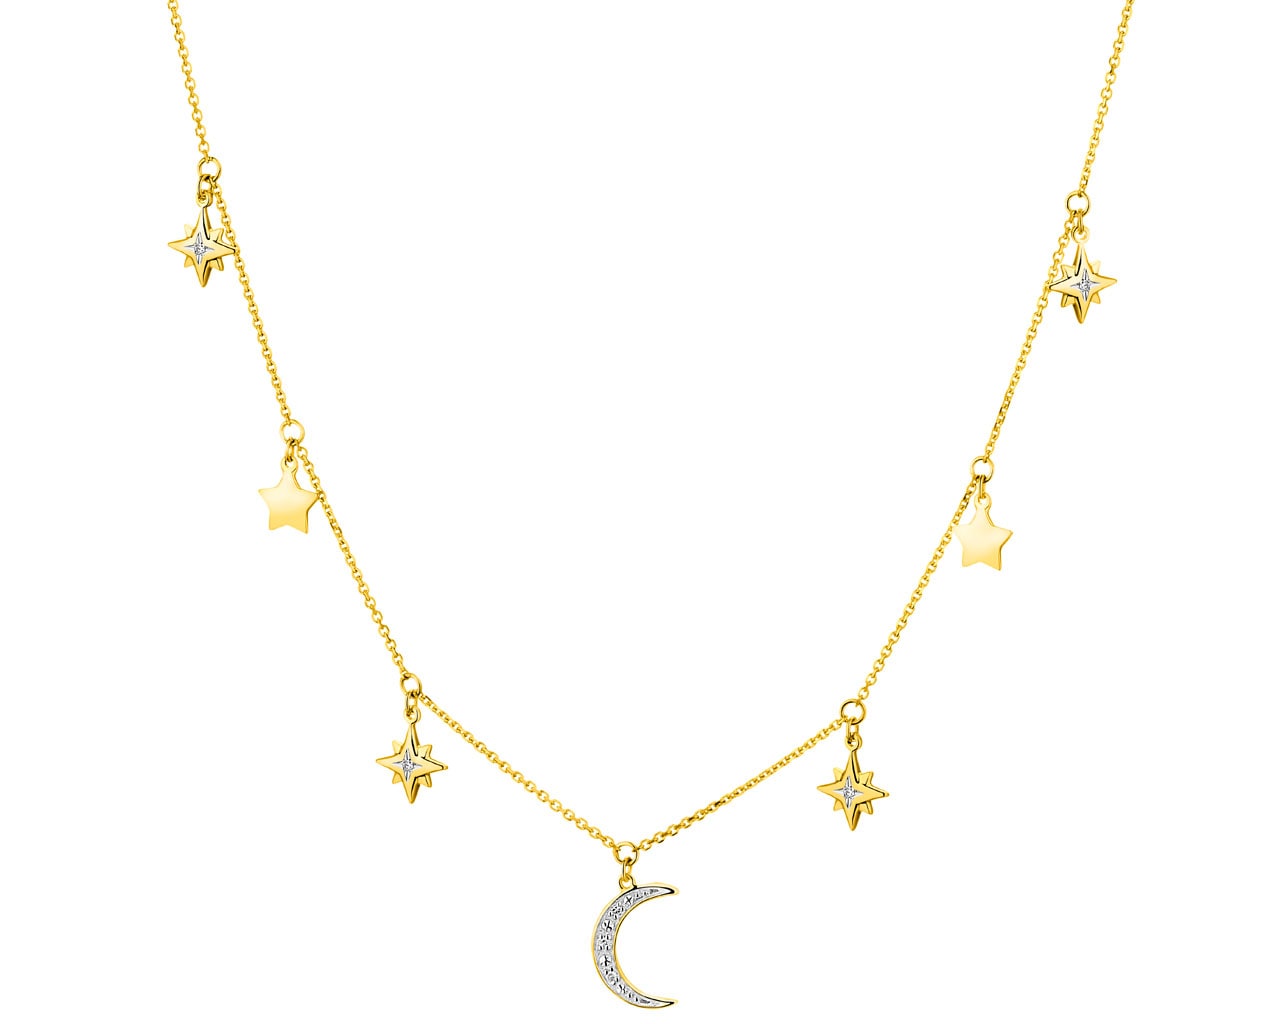 Naszyjnik z żółtego złota z diamentami - Księżyc, gwiazdy 0,02 ct - próba 585